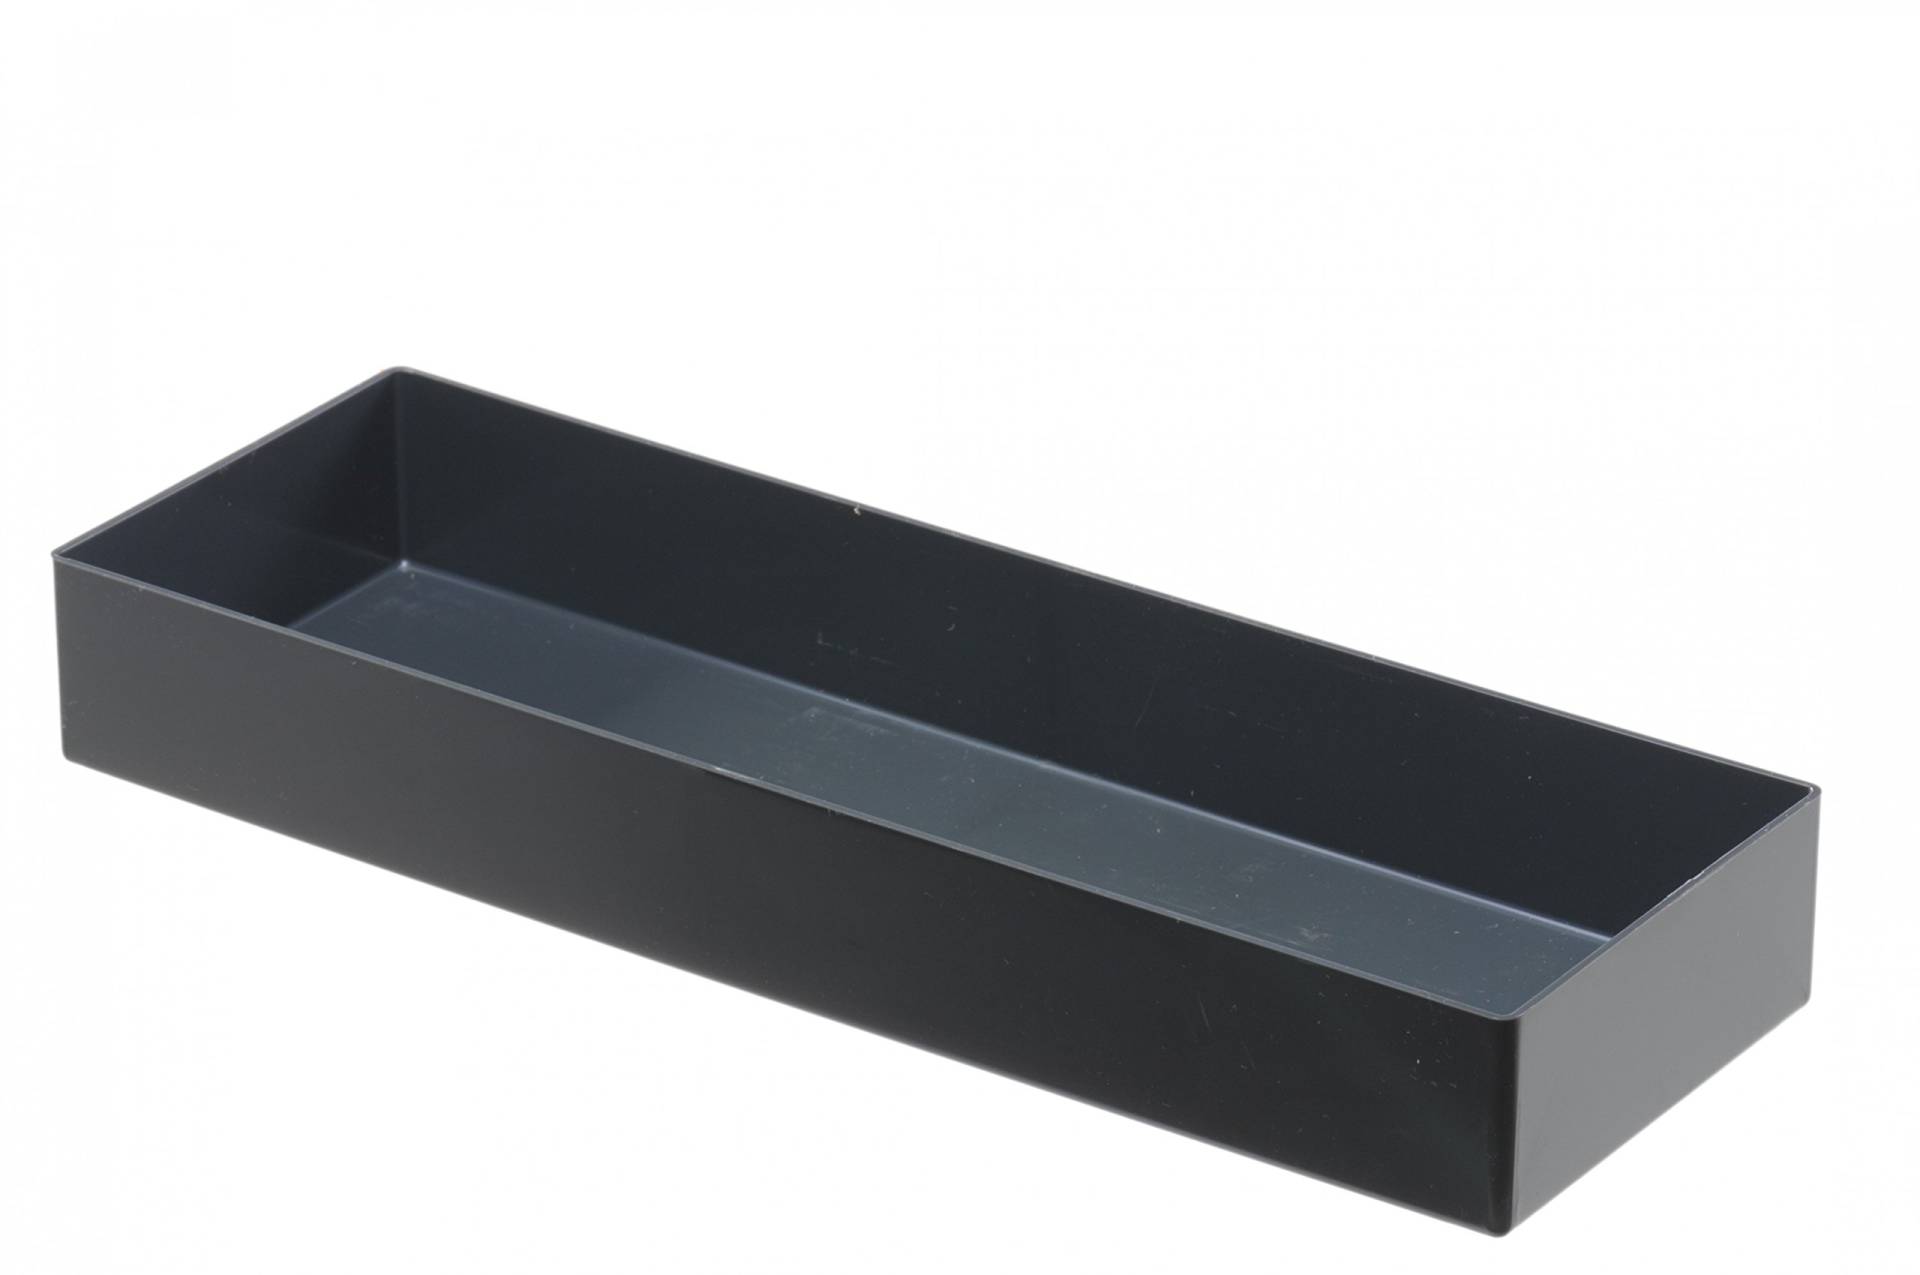 hünersdorff Einsatzbox aus hochschlagfestem Polystyrol (PS), Maße: 324 x 108 x 45 mm, Farbe: grau von hünersdorff